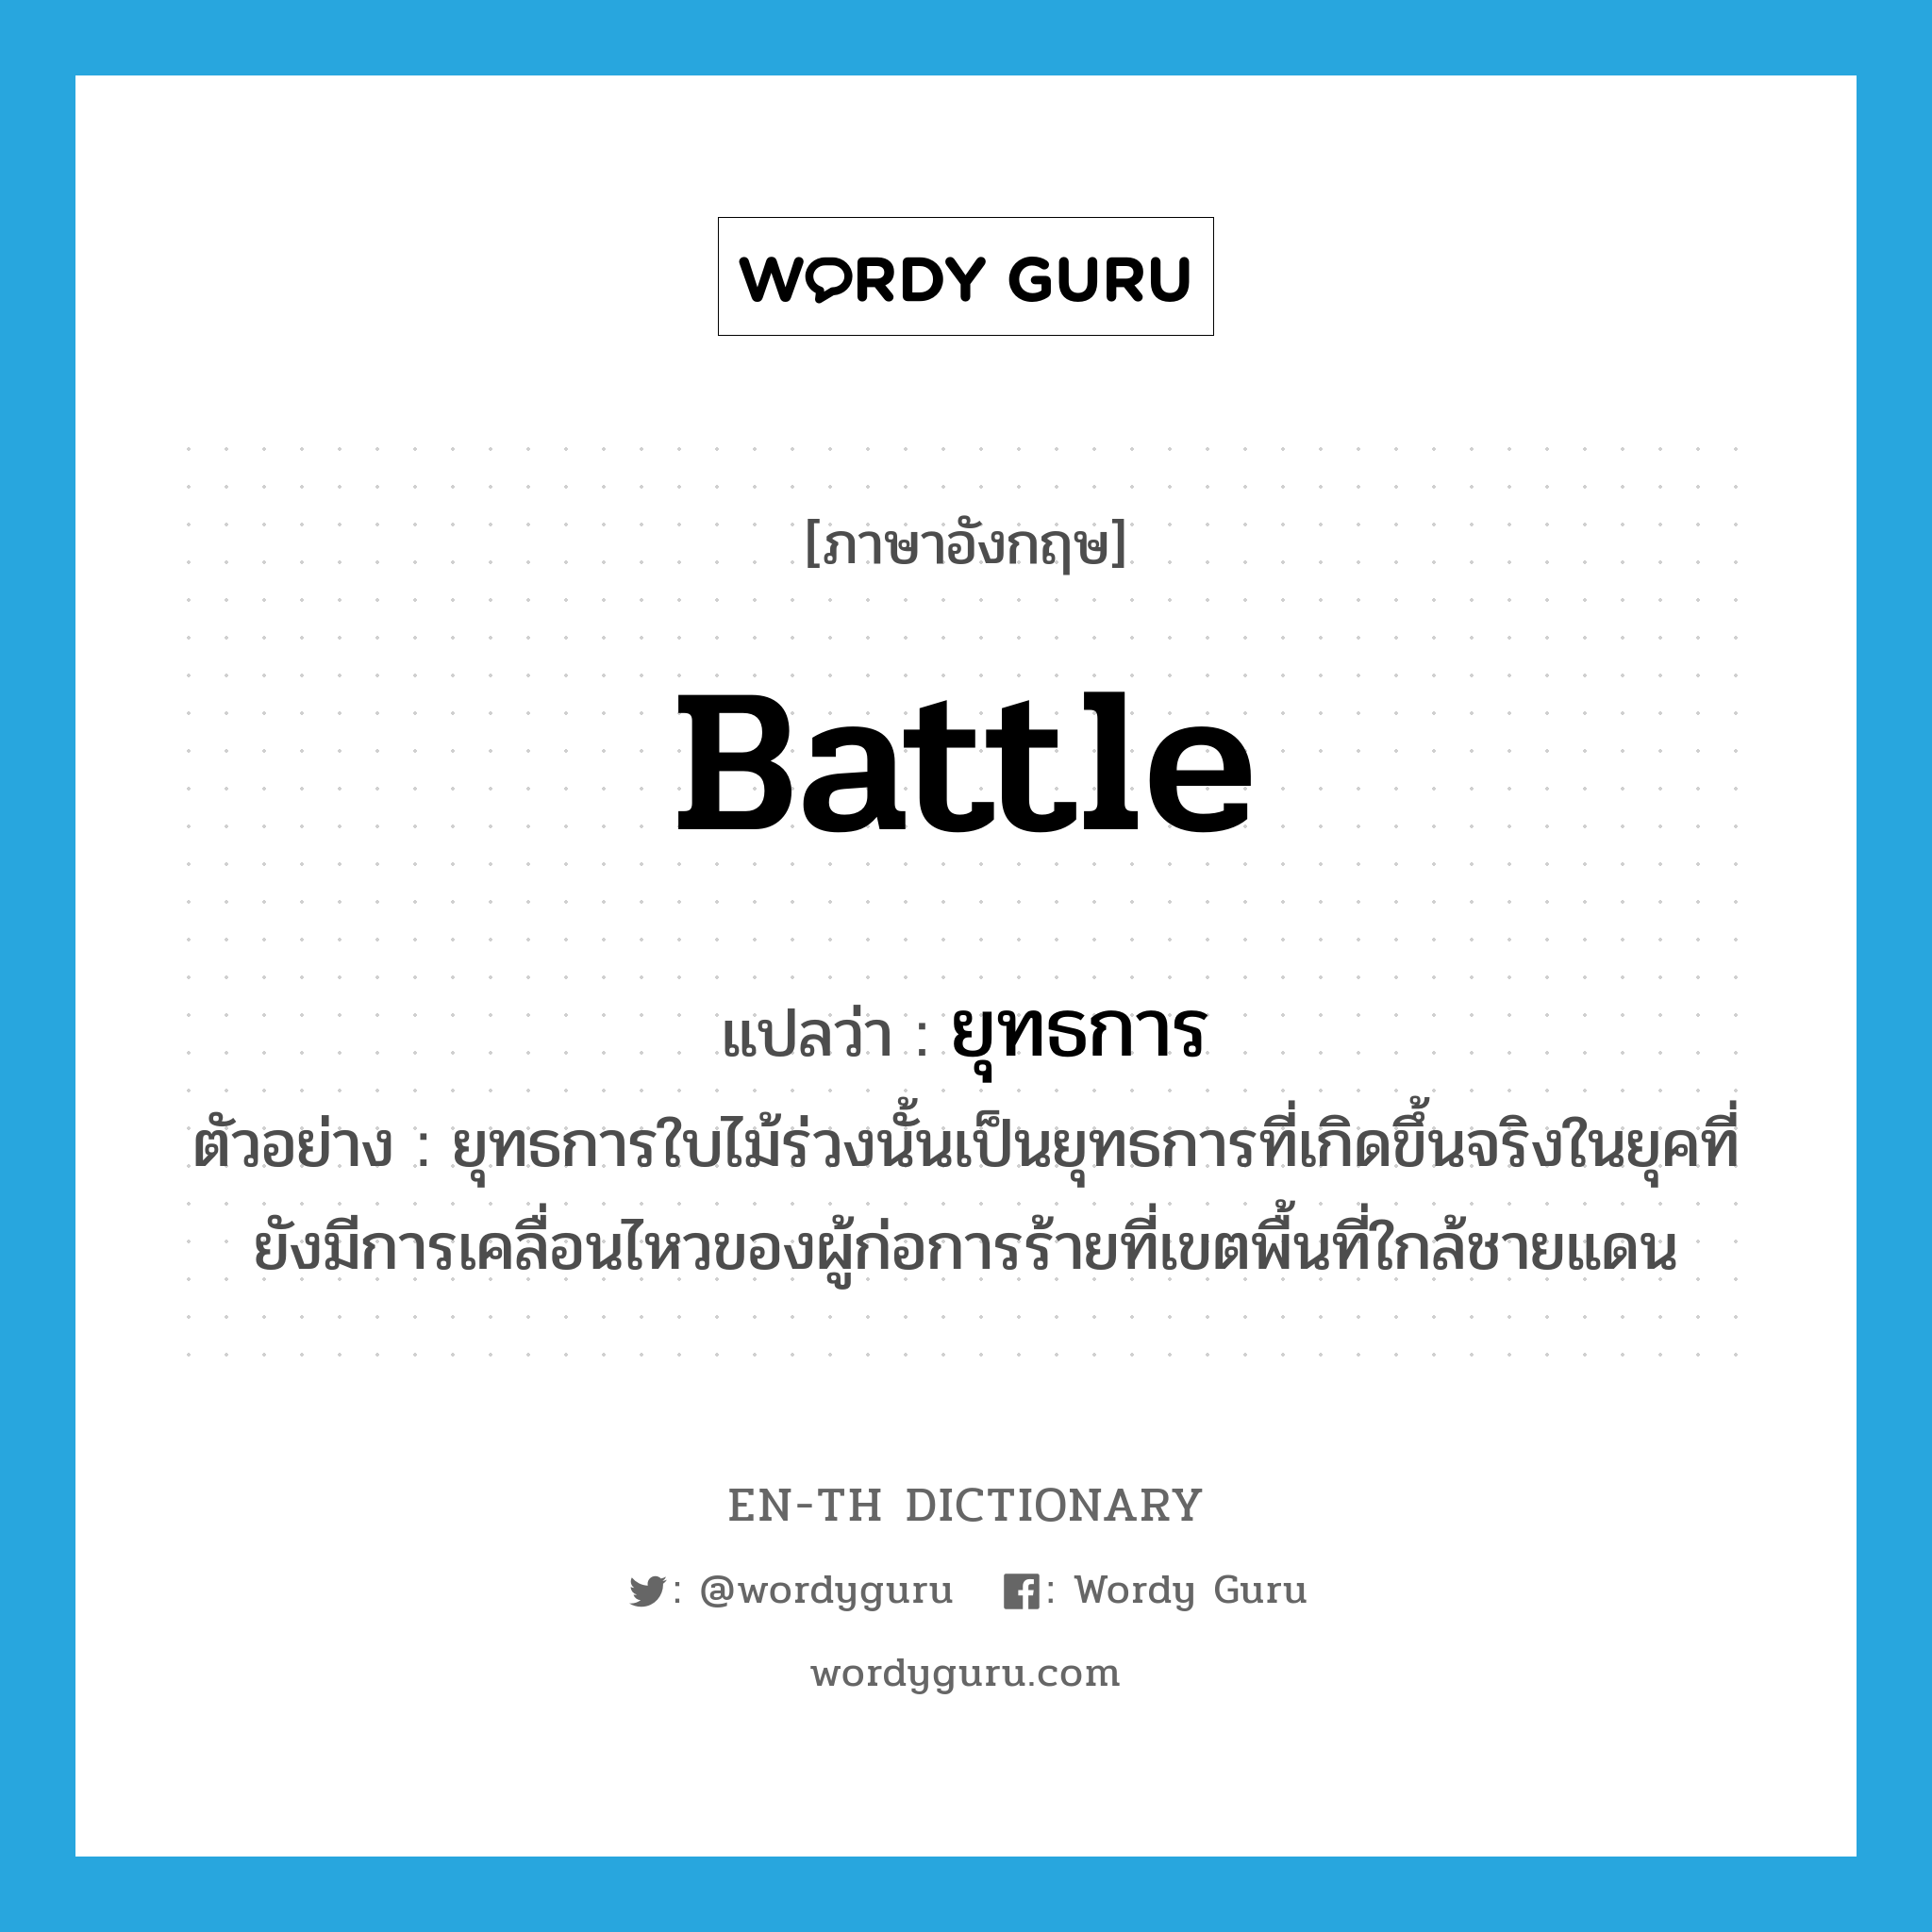 battle แปลว่า?, คำศัพท์ภาษาอังกฤษ battle แปลว่า ยุทธการ ประเภท N ตัวอย่าง ยุทธการใบไม้ร่วงนั้นเป็นยุทธการที่เกิดขึ้นจริงในยุคที่ยังมีการเคลื่อนไหวของผู้ก่อการร้ายที่เขตพื้นที่ใกล้ชายแดน หมวด N